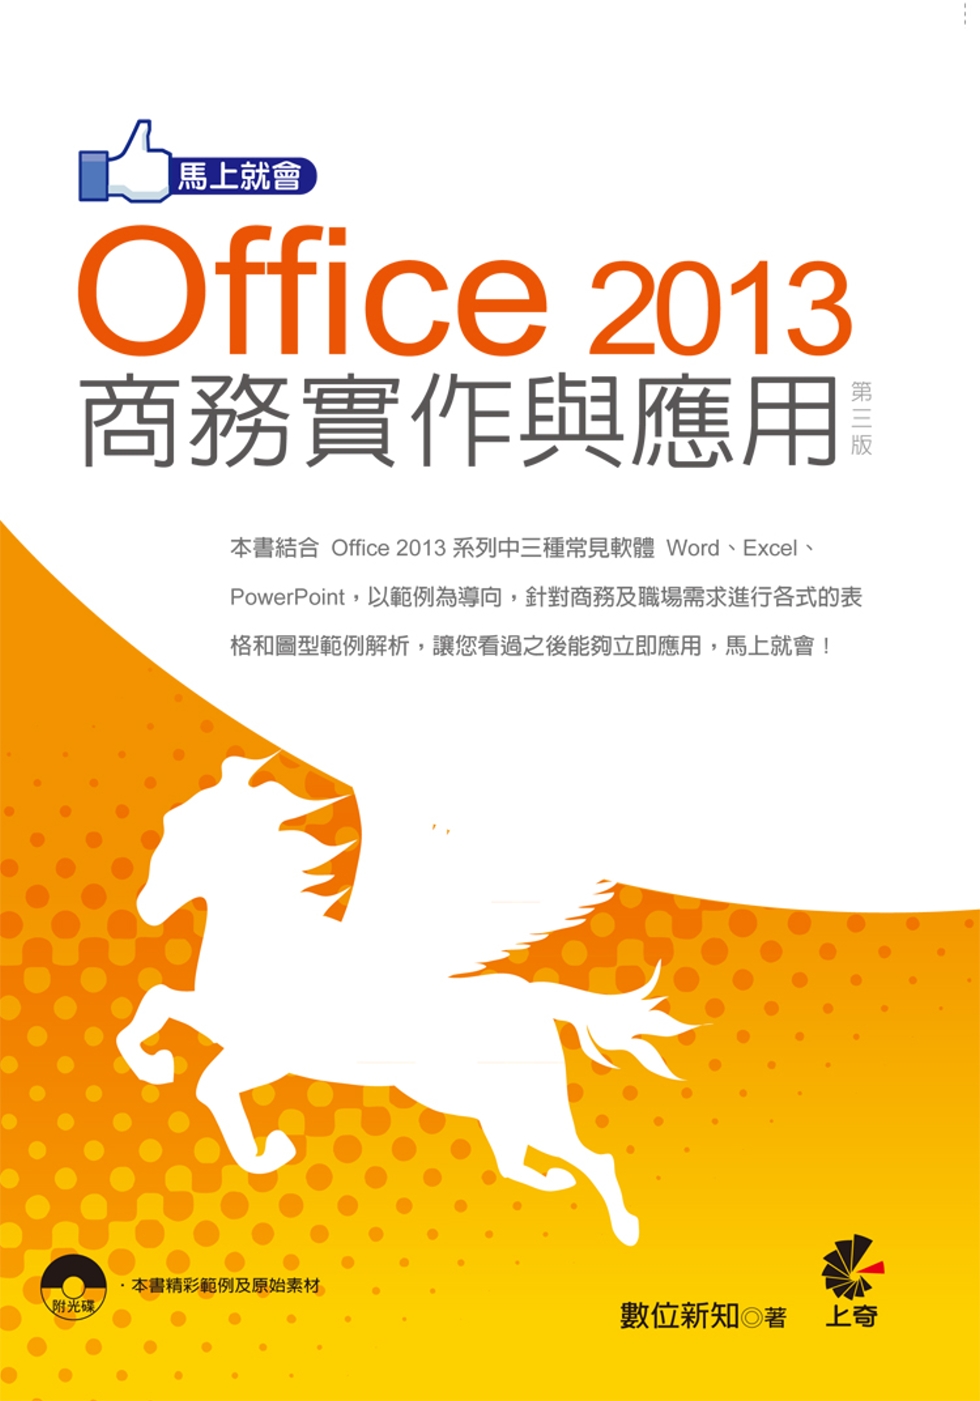 馬上就會 Office 2013 商務實作與應用(第三版)附光碟